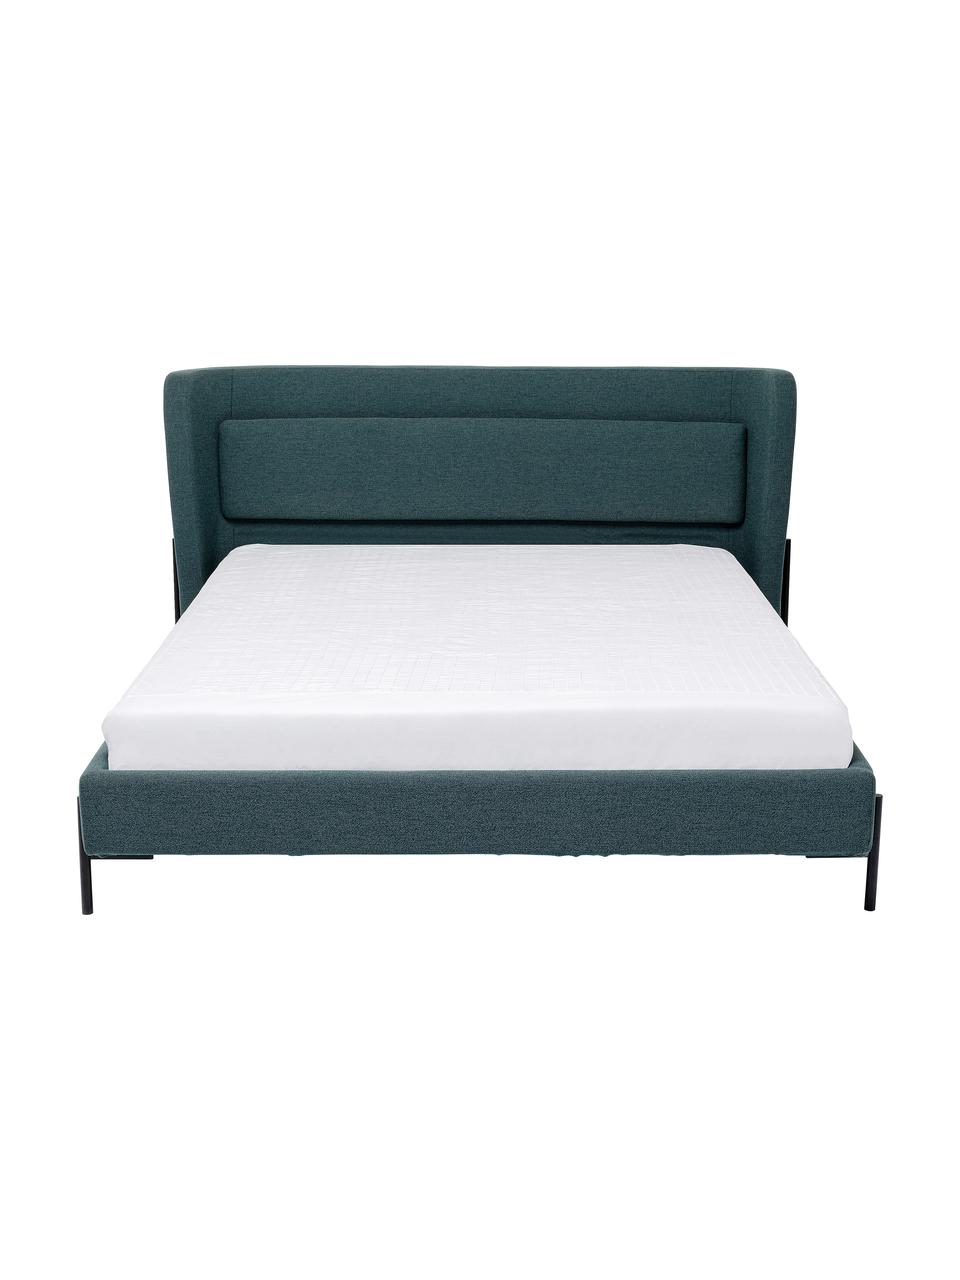 Čalúnená posteľ Tivoli, Zelená, 160 x 200 cm